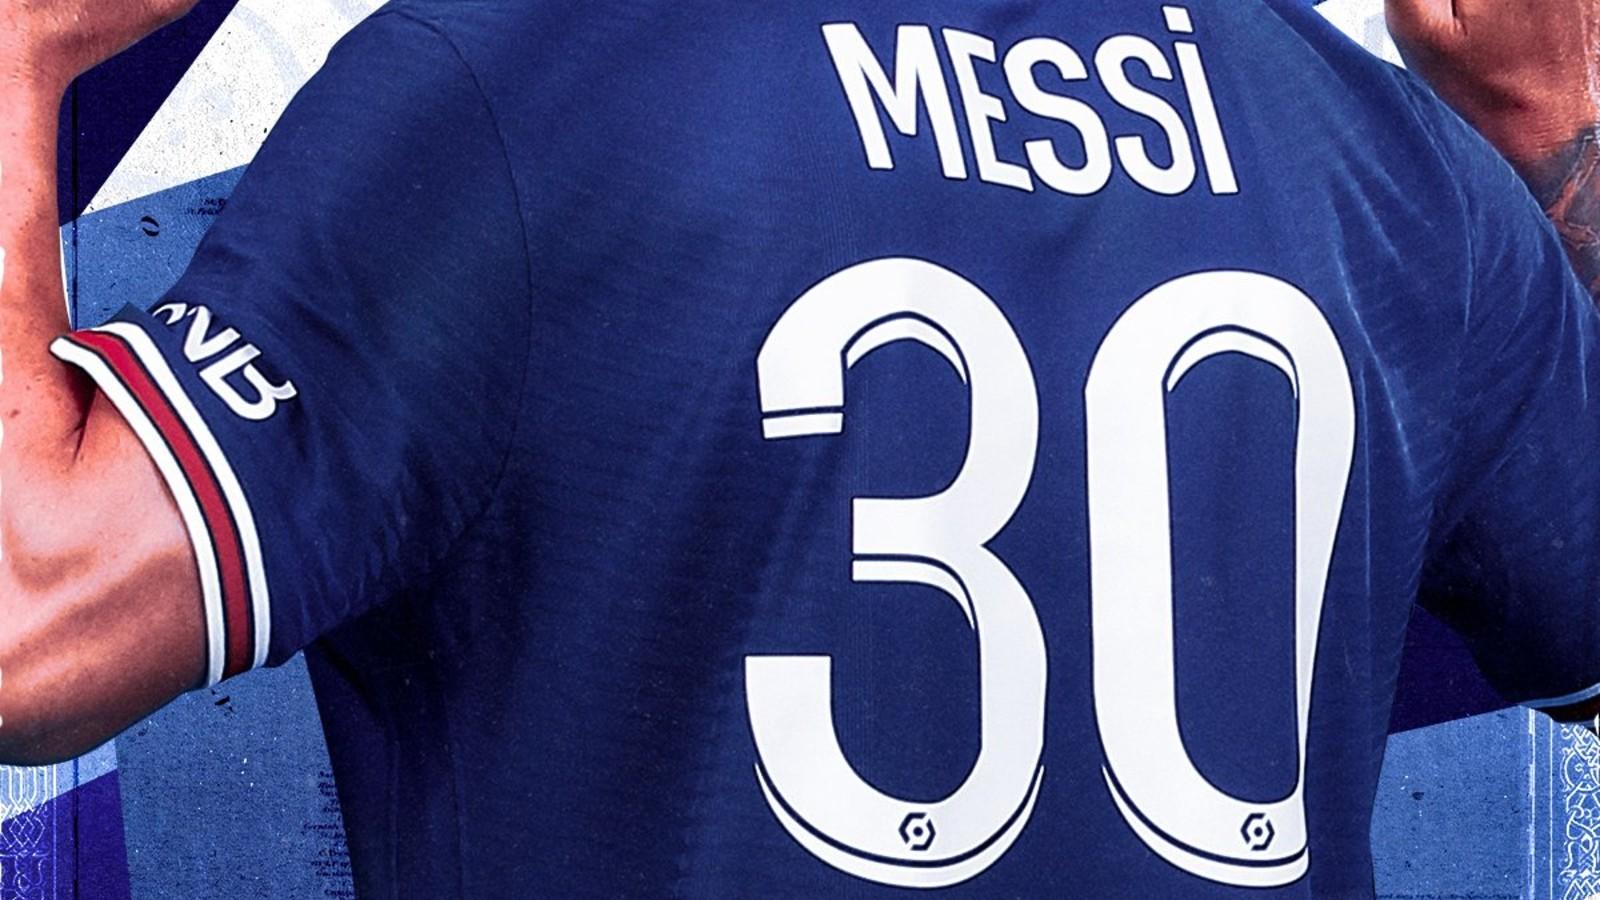 10, 30, 15? ¿Qué números ha portado Messi en sus camisetas durante su  carrera como futbolista profesional? - Los Angeles Times